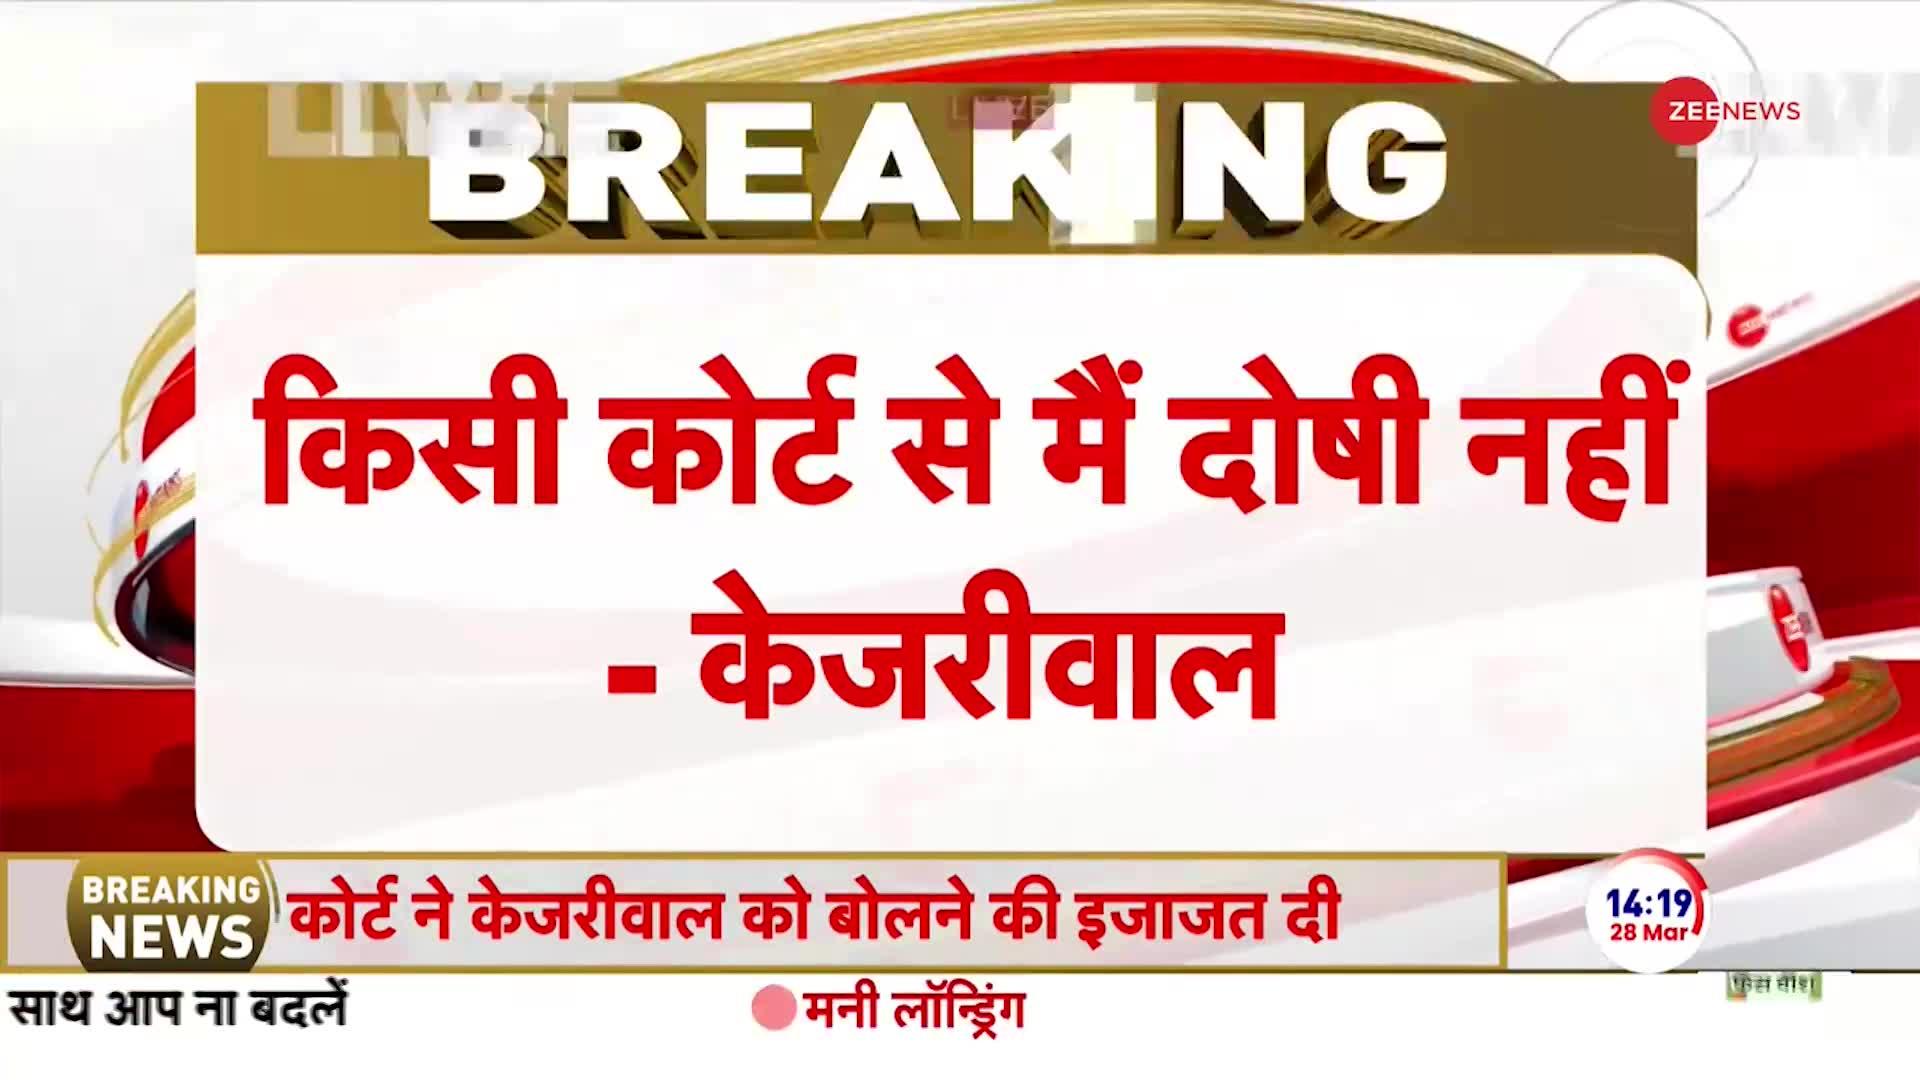 Arvind Kejriwal Statement in Court: 2 साल से केस चल रहा है, किसी कोर्ट से मैं दोषी नहीं- केजरीवाल